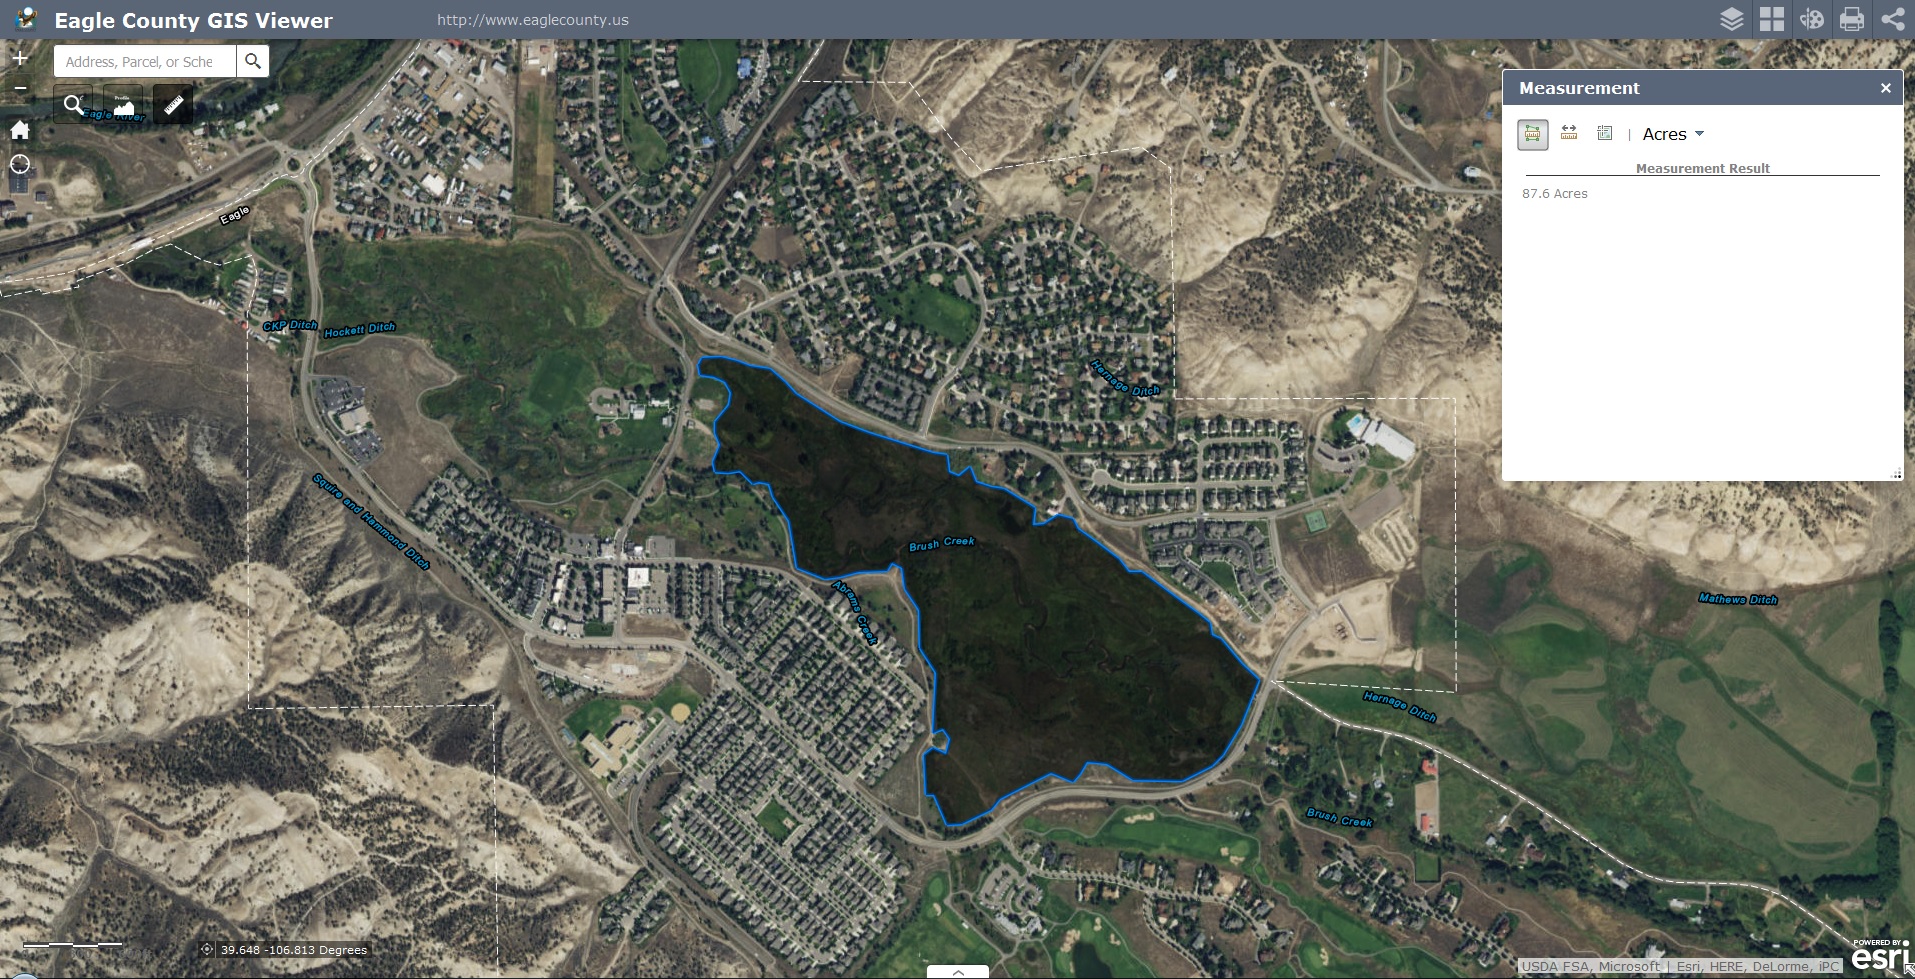 11-3-16-brush-creek-recreation-lakes-eagle-county-gis-lake-2-87-6-acres